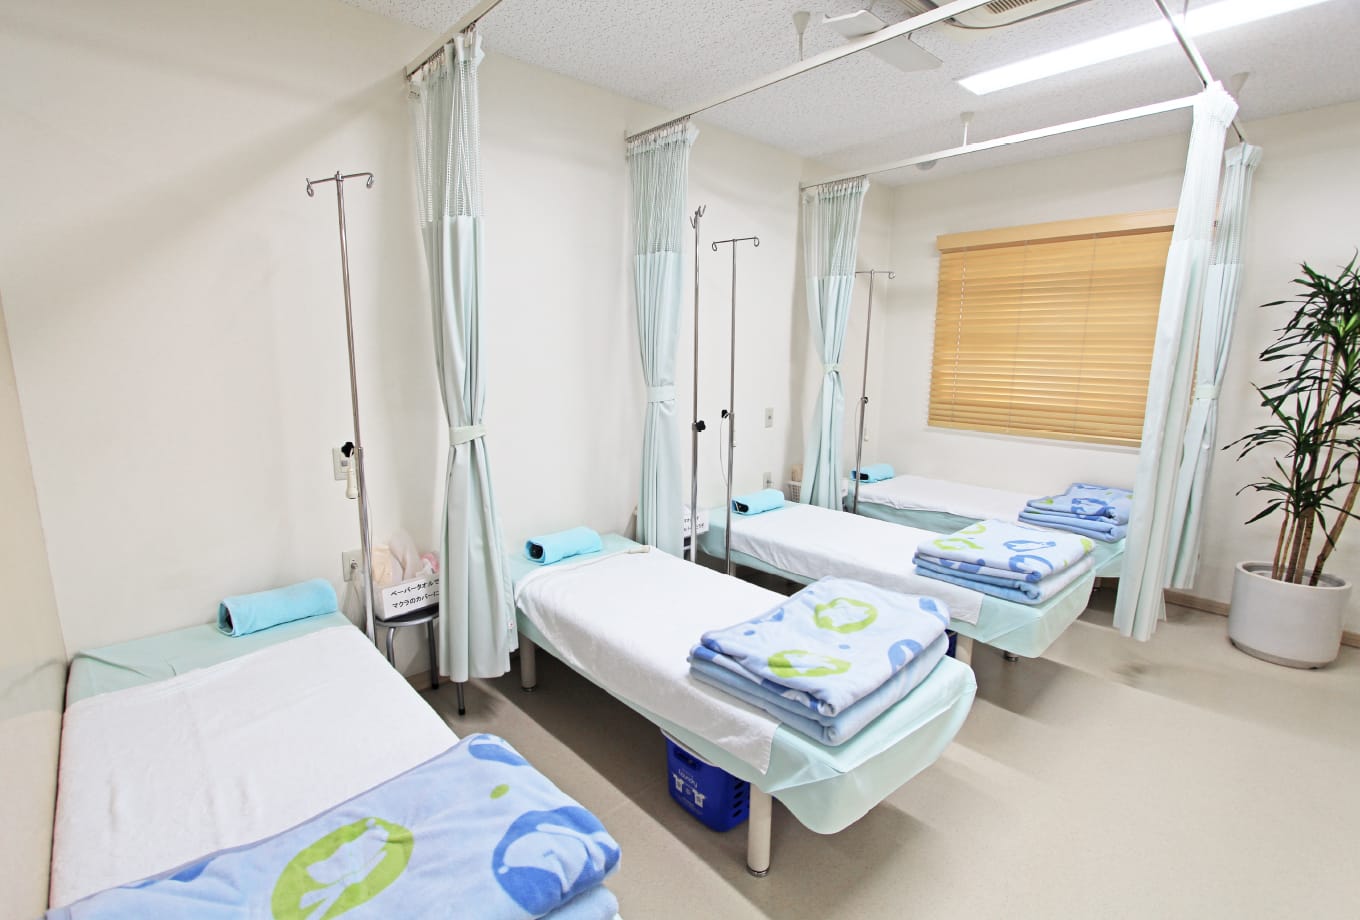 岡田クリニックでは、患者様の不安をやわらげる親切・丁寧な診療を心がけております。